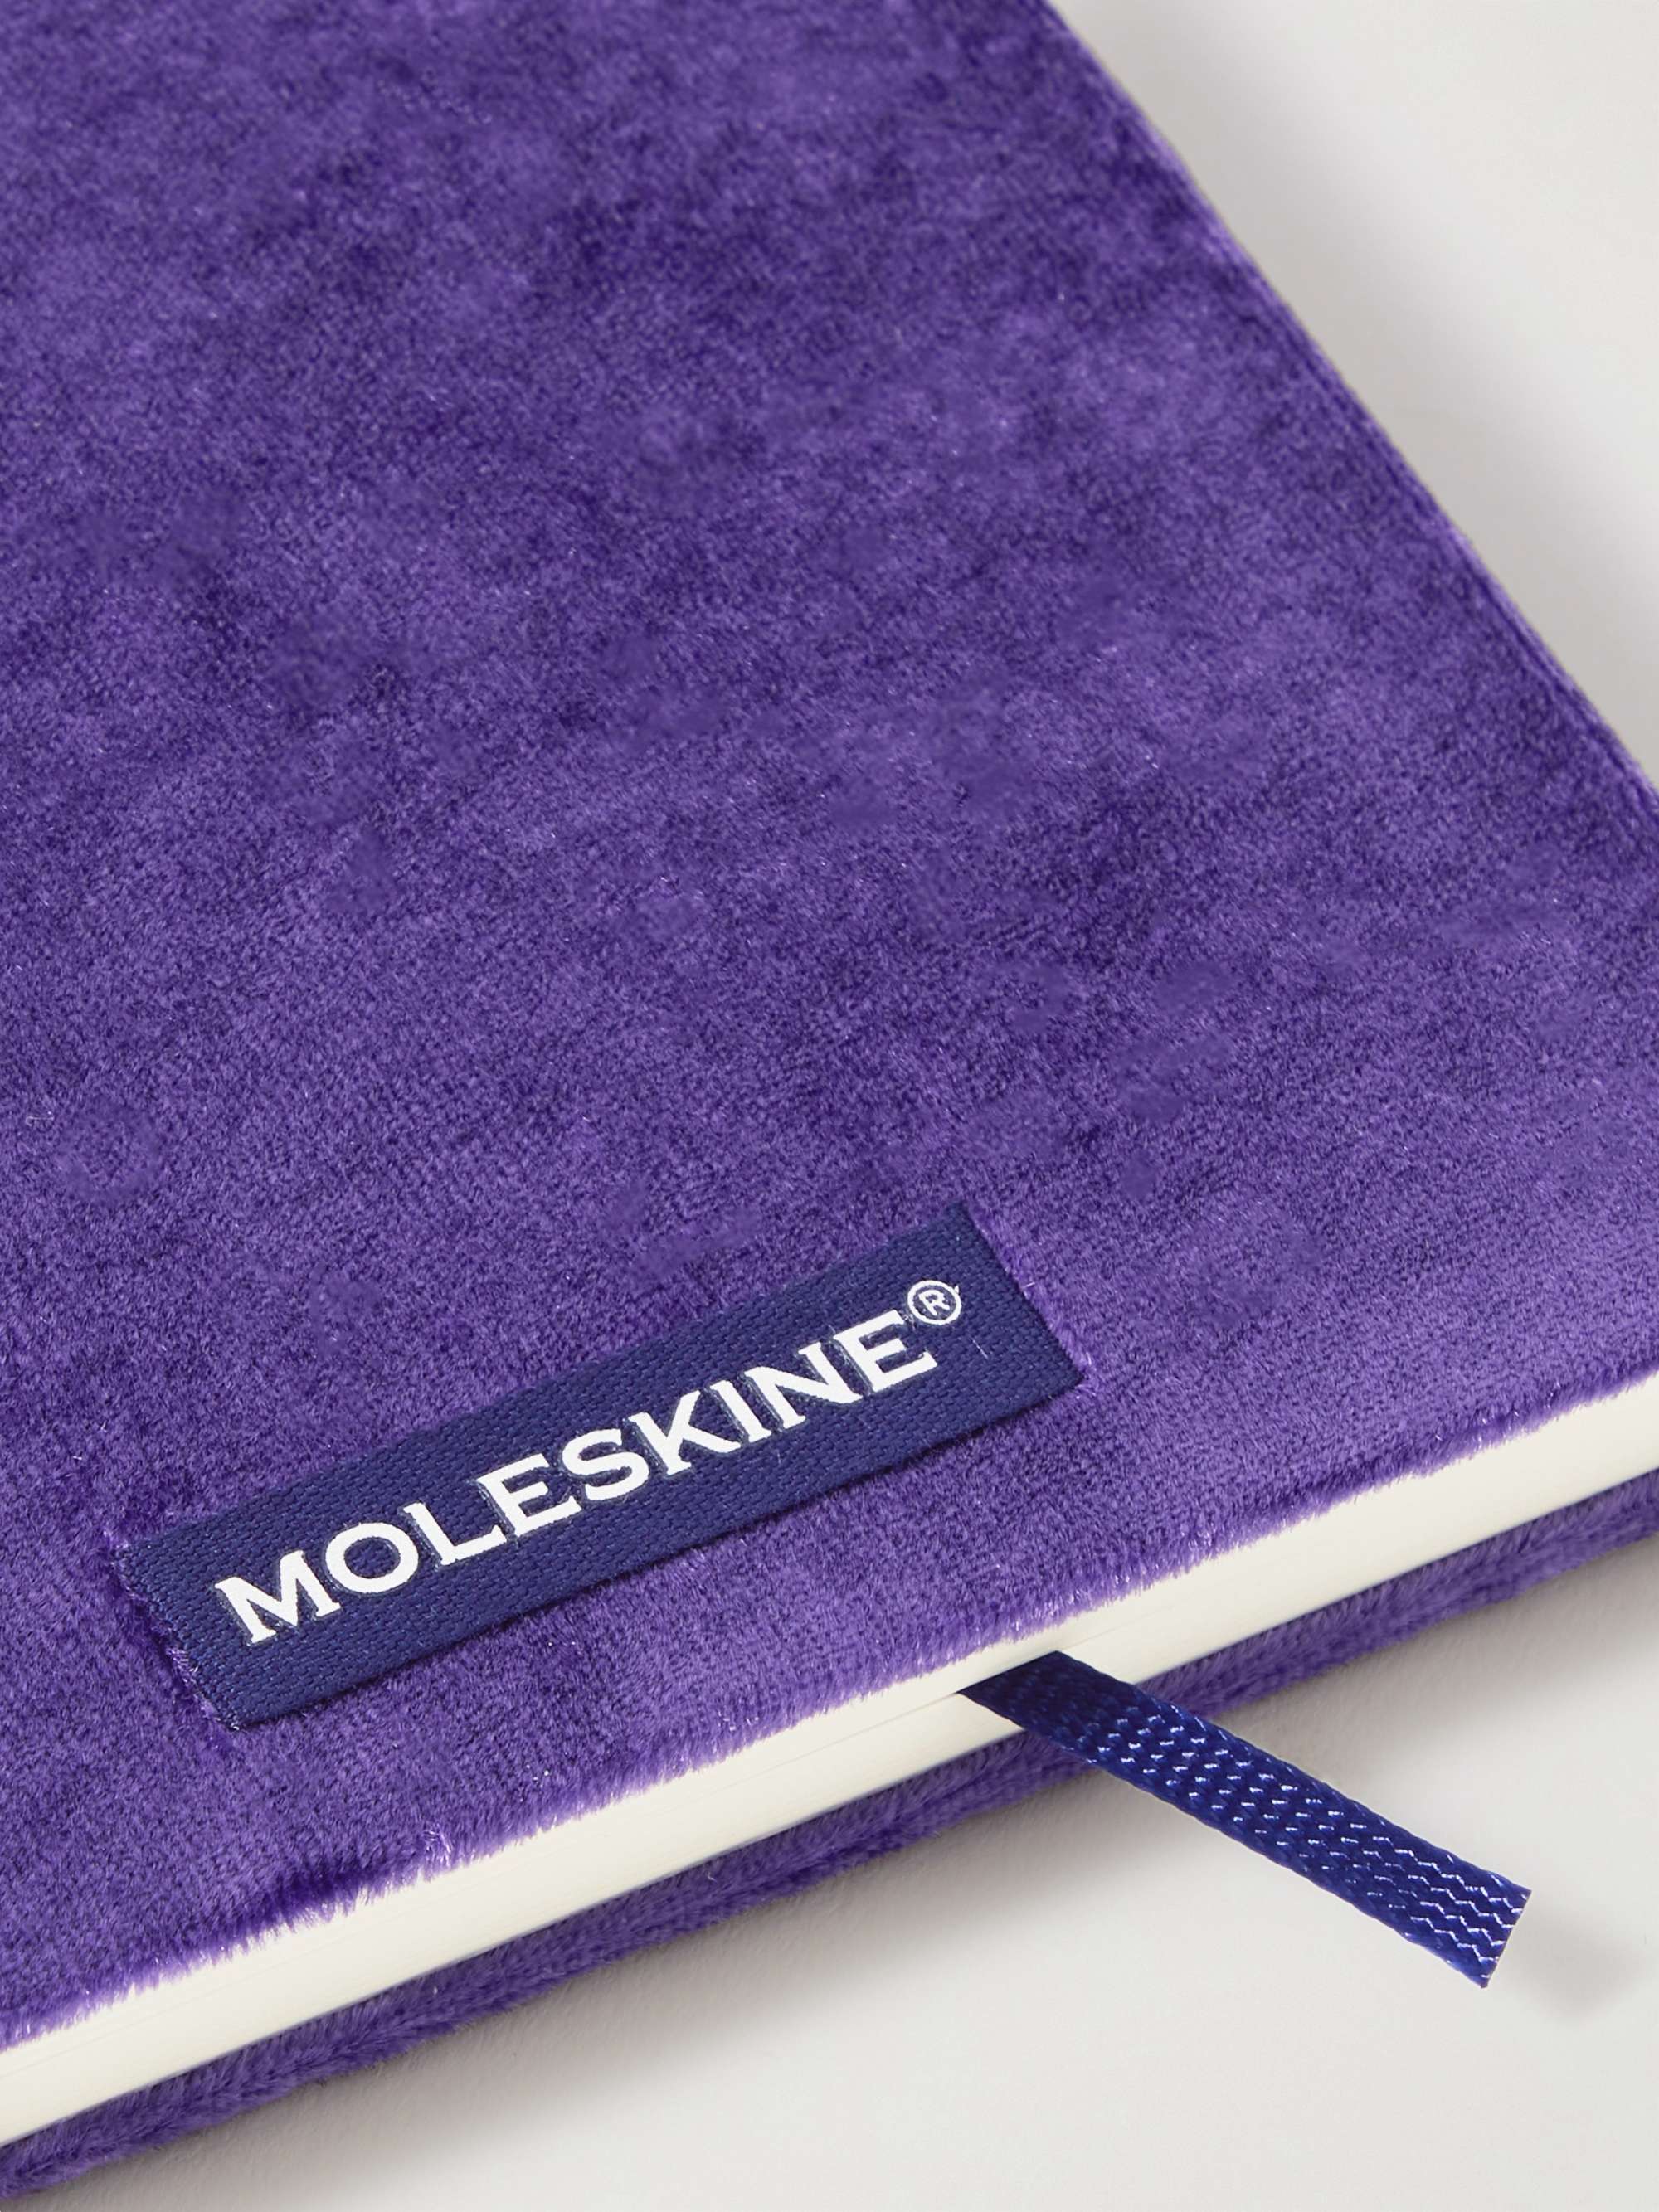 MOLESKINE Velvet Notebook